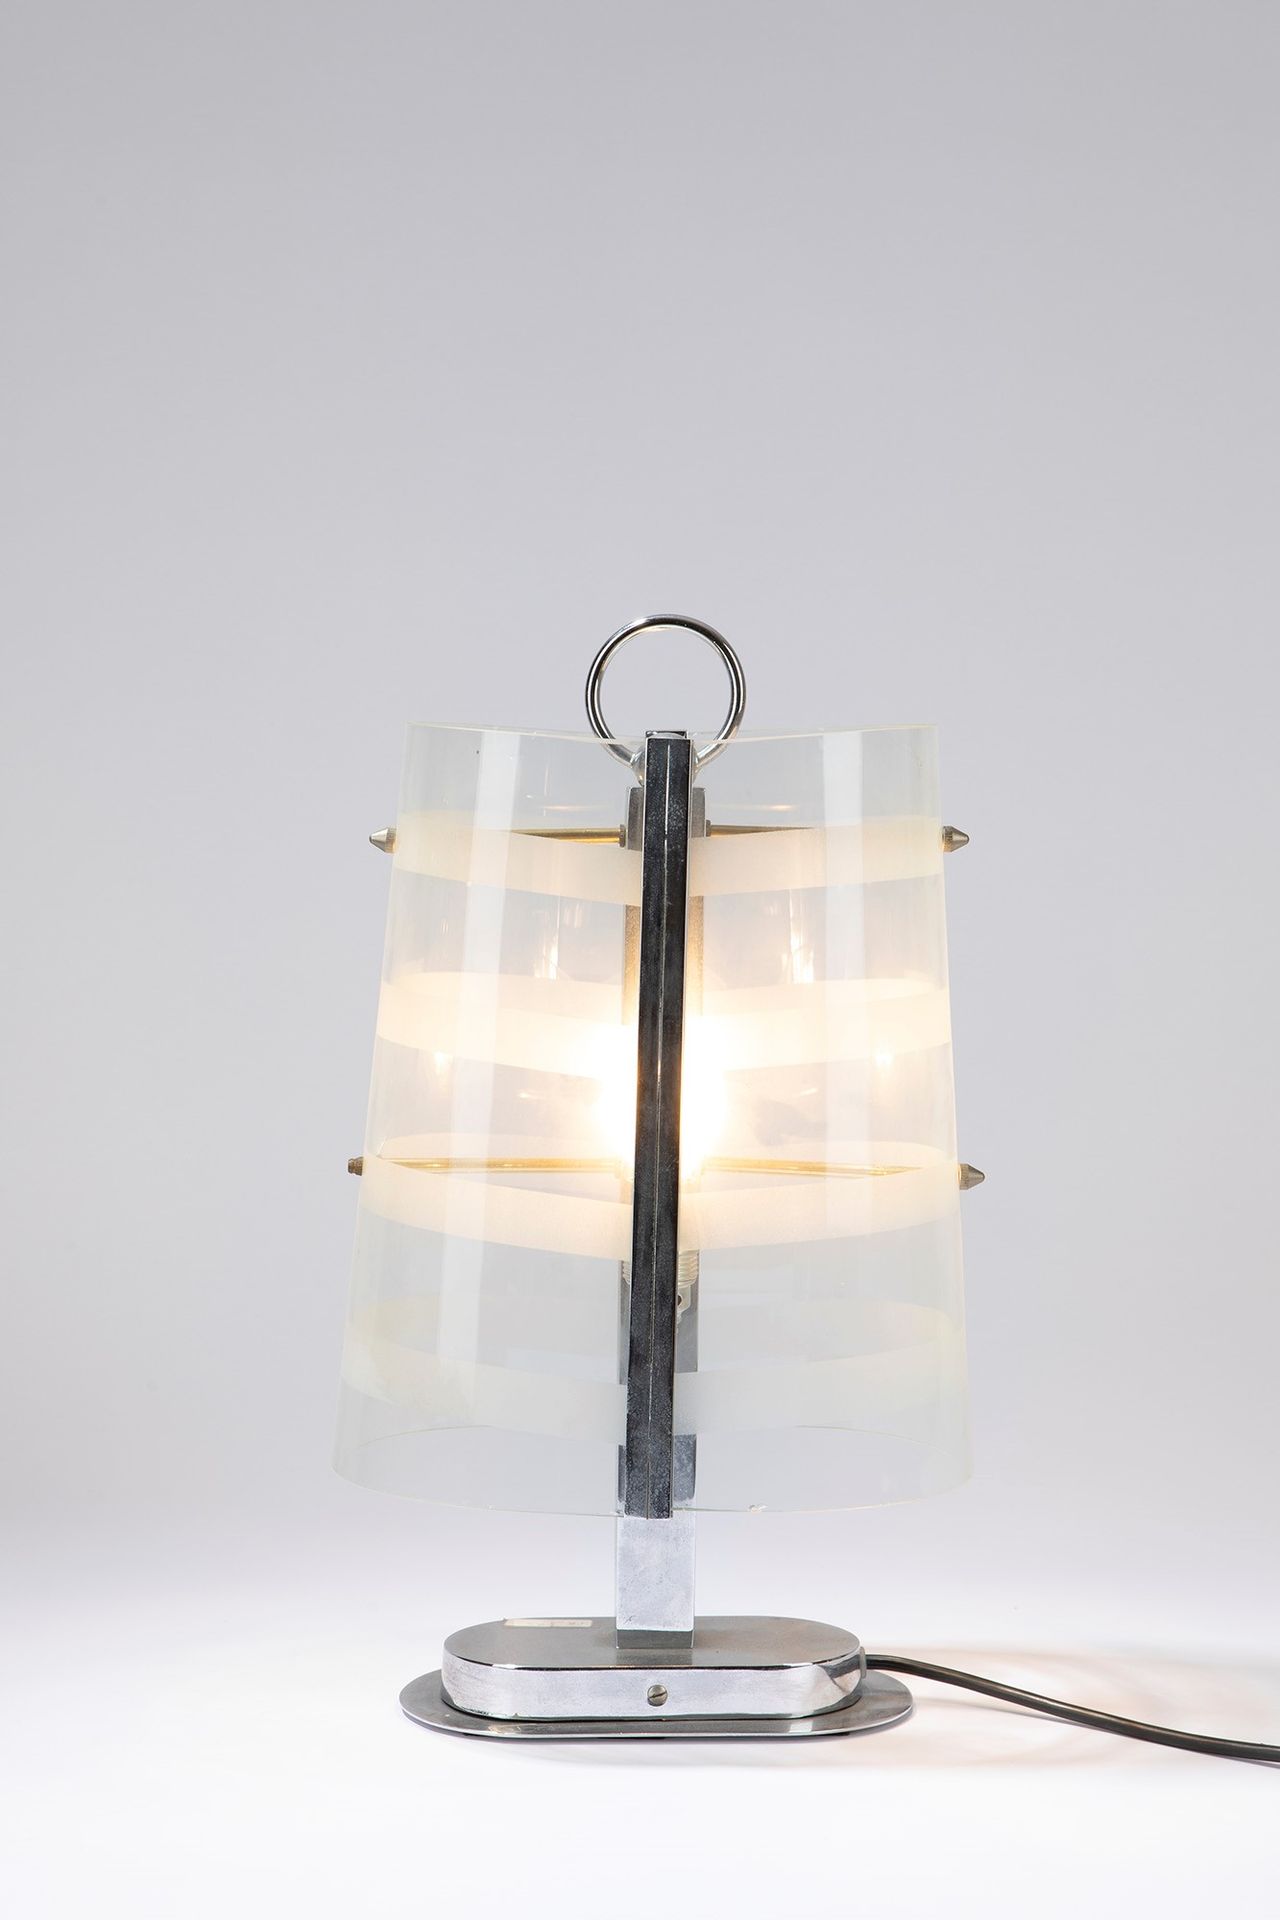 ITALIAN MANUFACTURE Lámpara de sobremesa, época de los años 30

21 cm x 15 cm x &hellip;